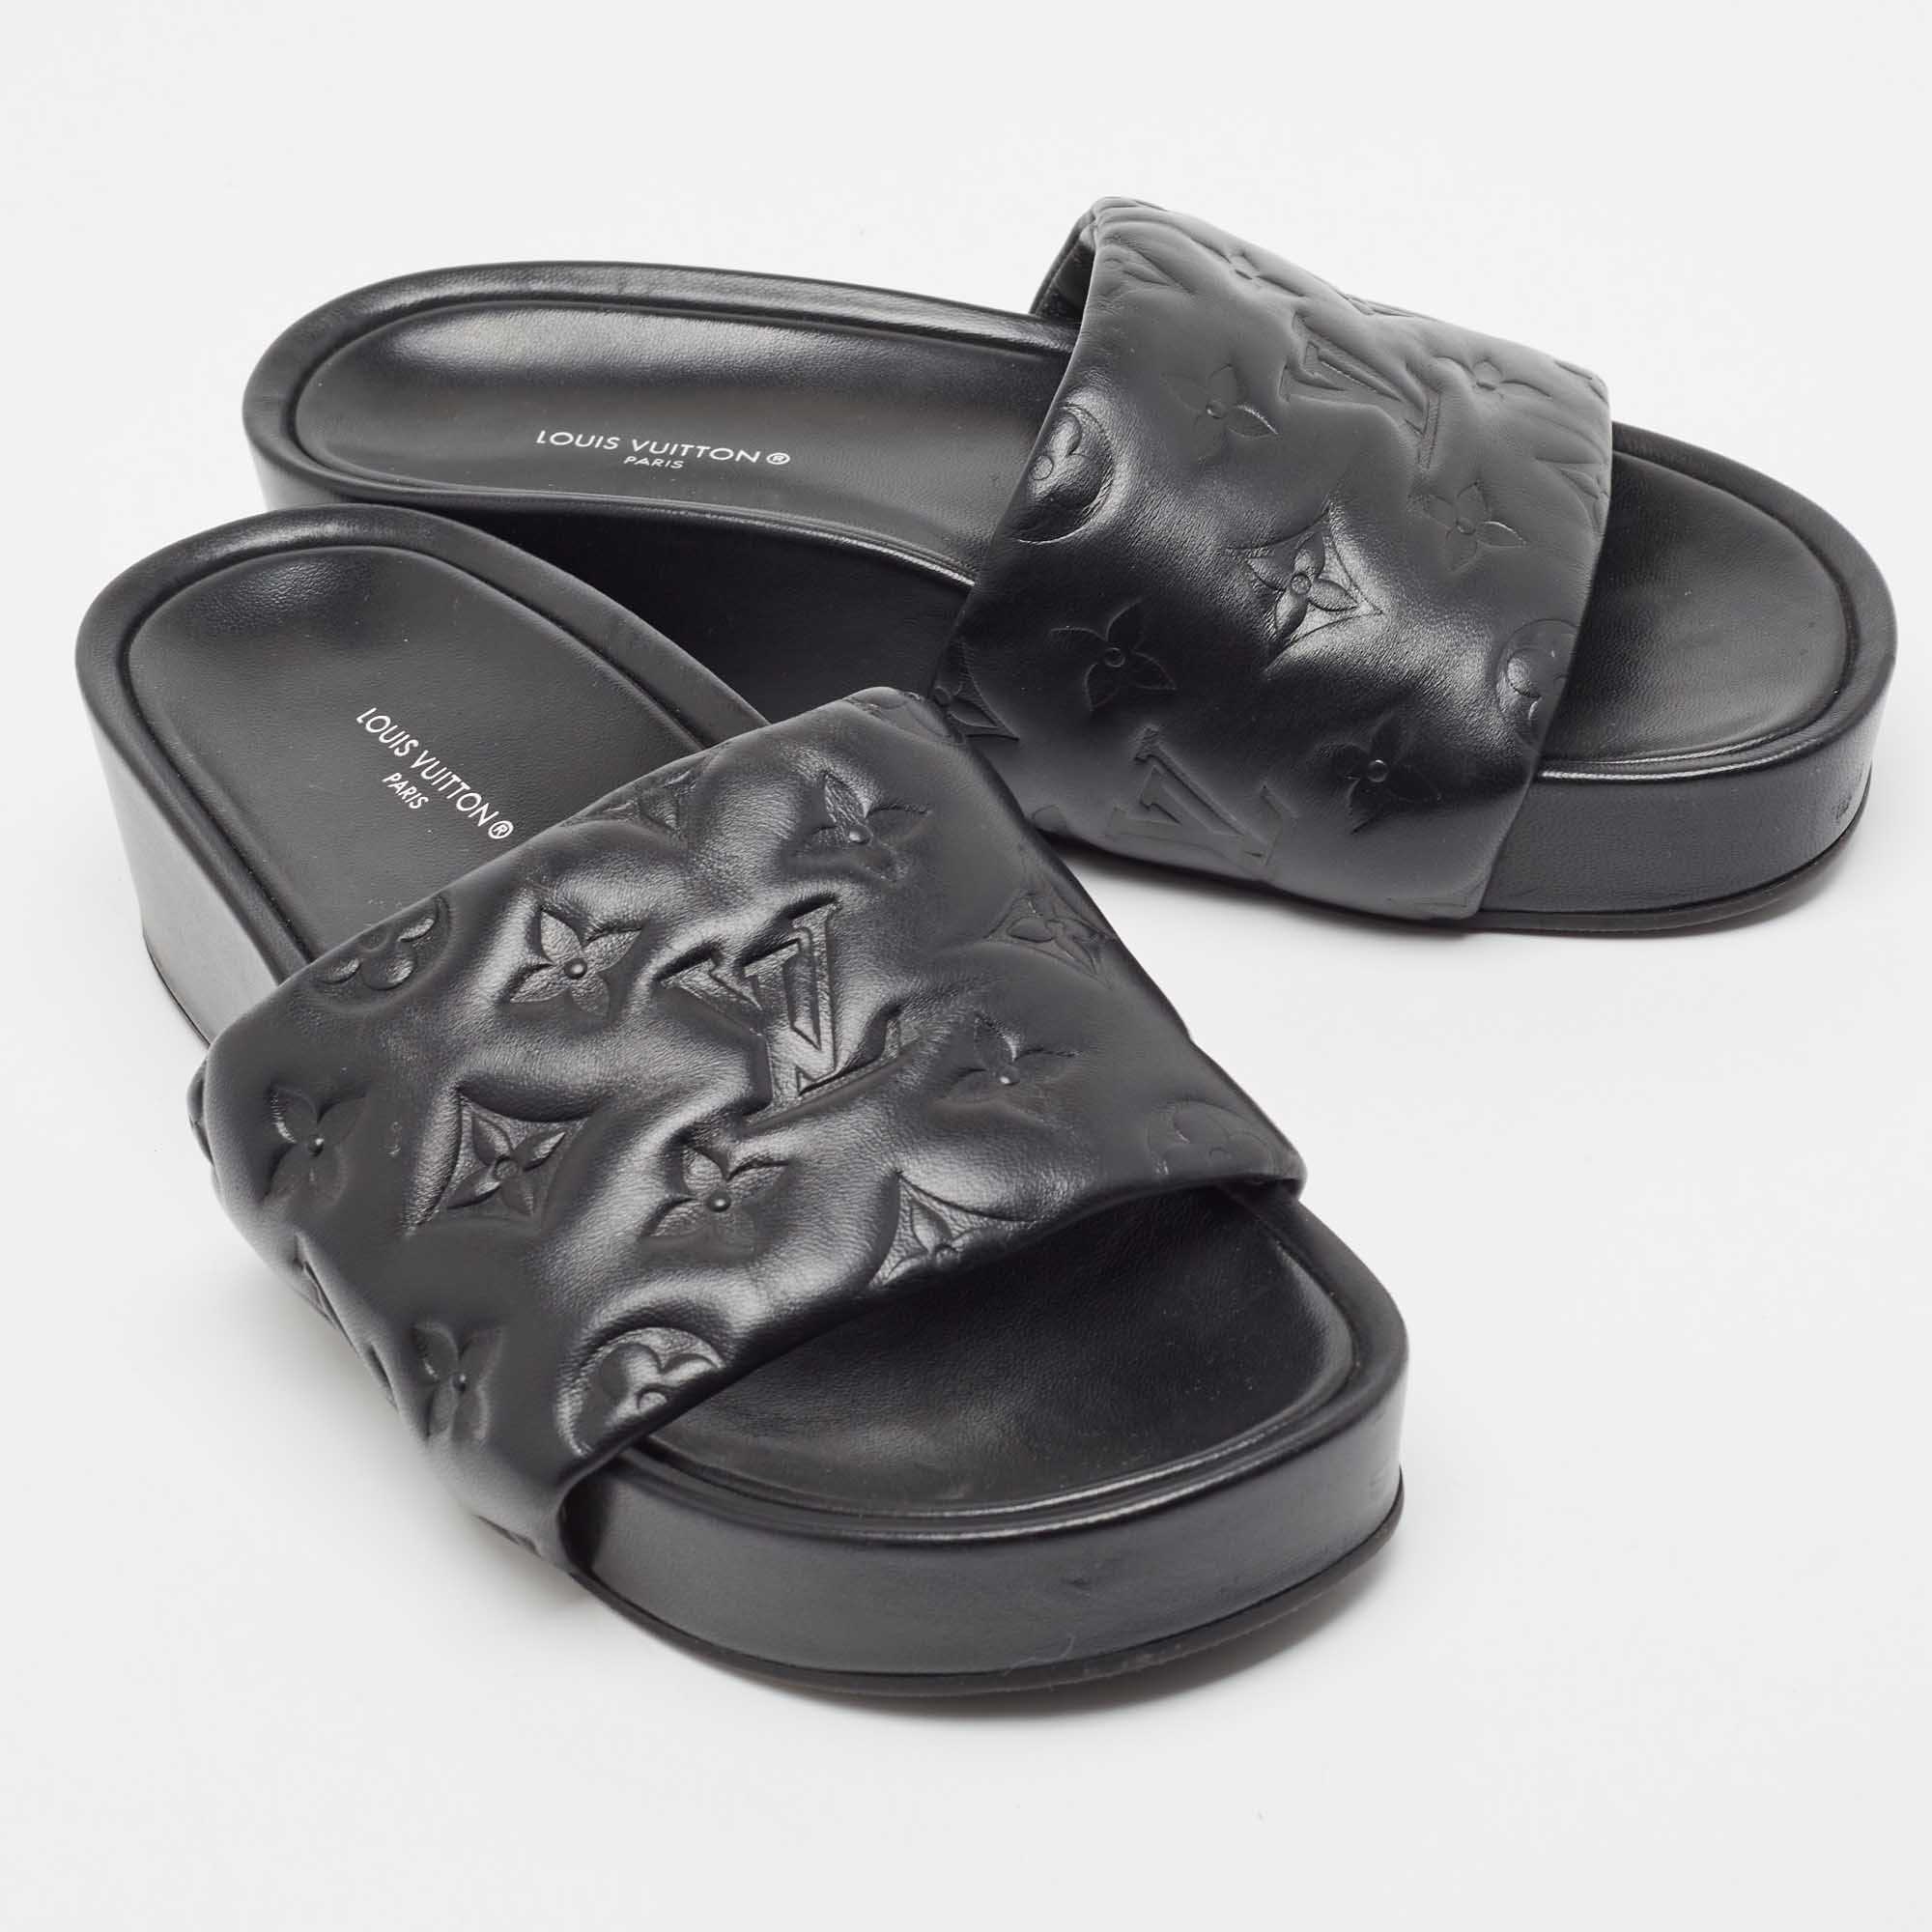 Louis Vuitton Black Leather Waterfront Sandals Size 36